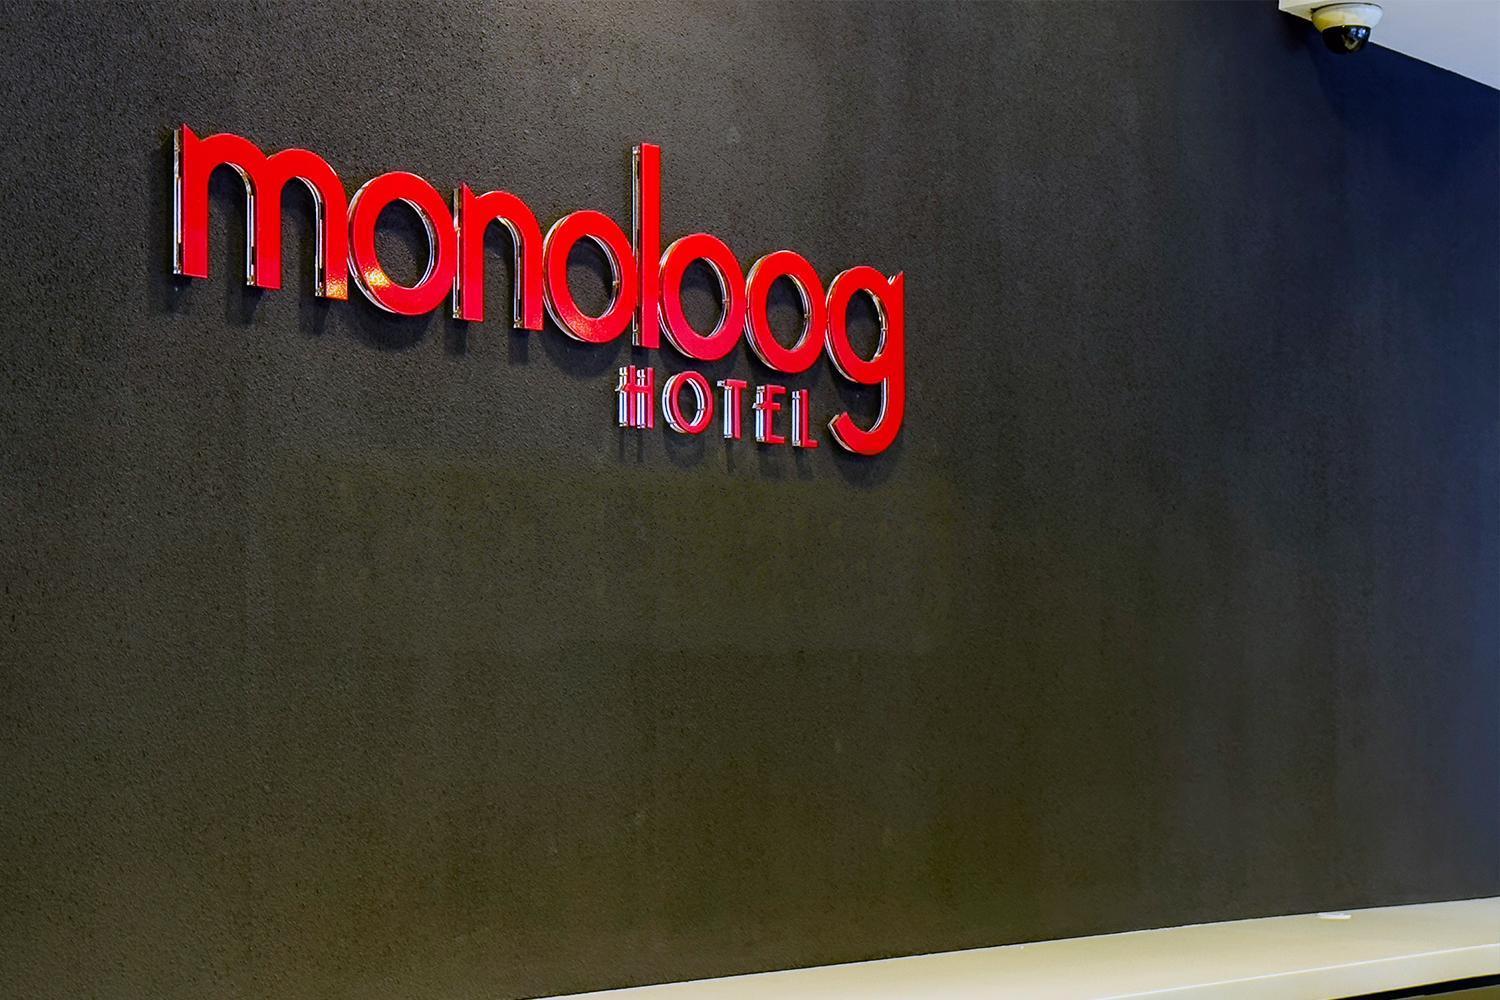 Monoloog Hotel Palembang Ngoại thất bức ảnh